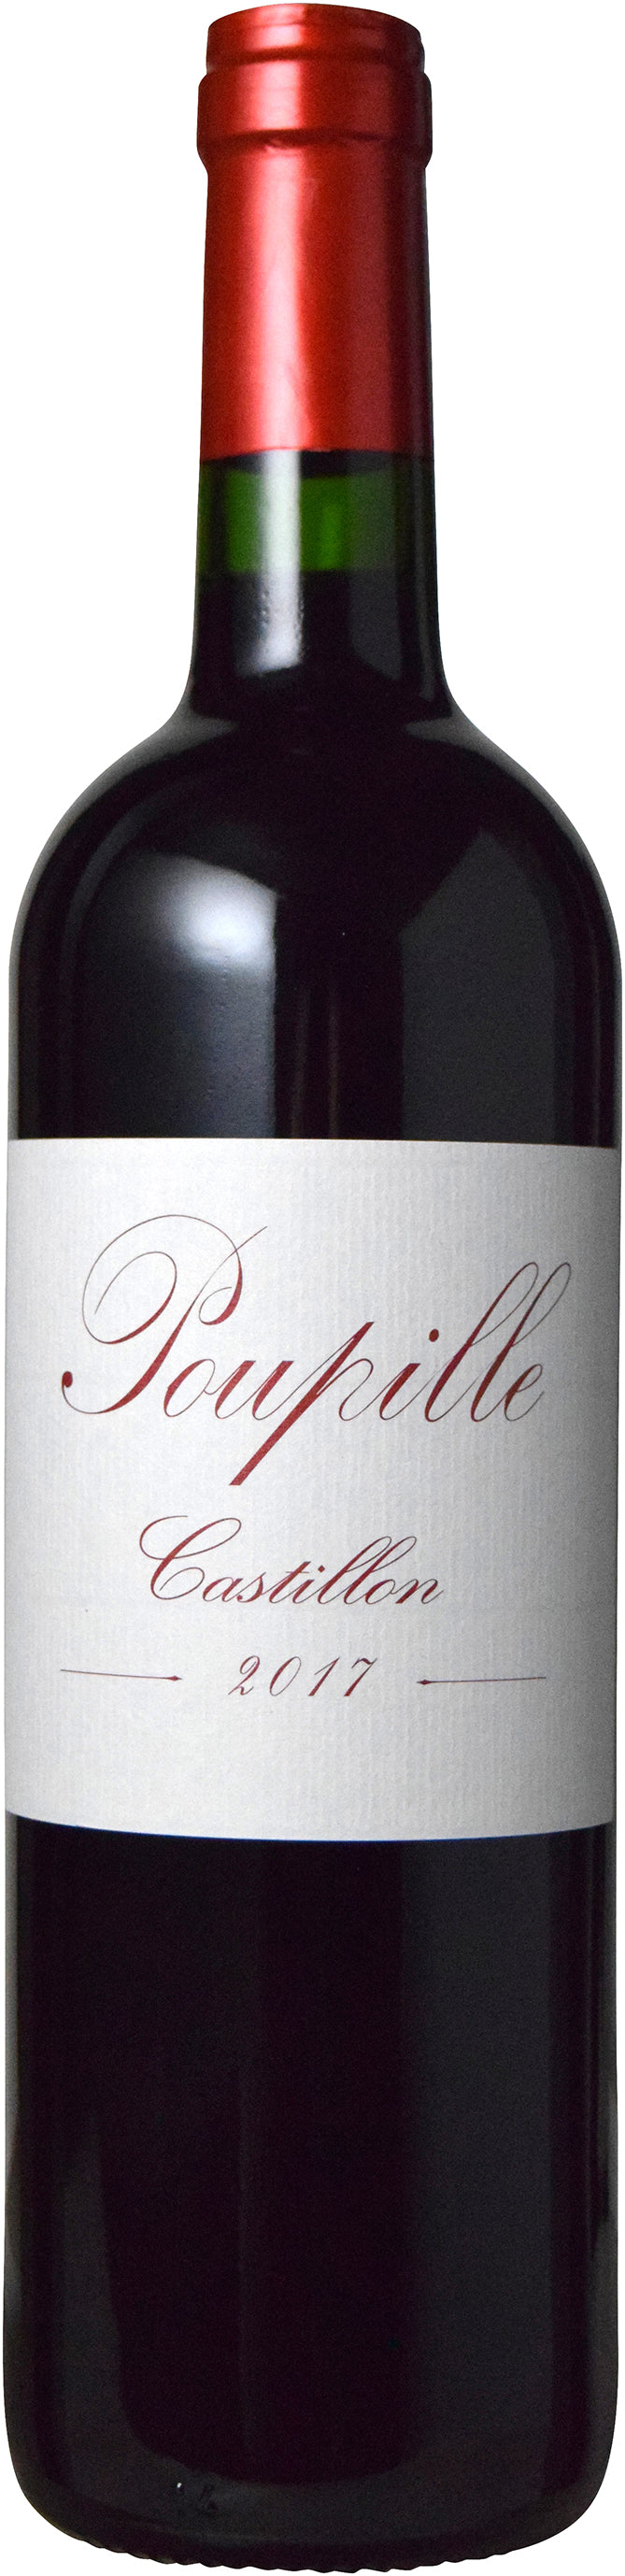 Poupille Castillon Côtes de Bordeaux 2017 (Organic Wine)